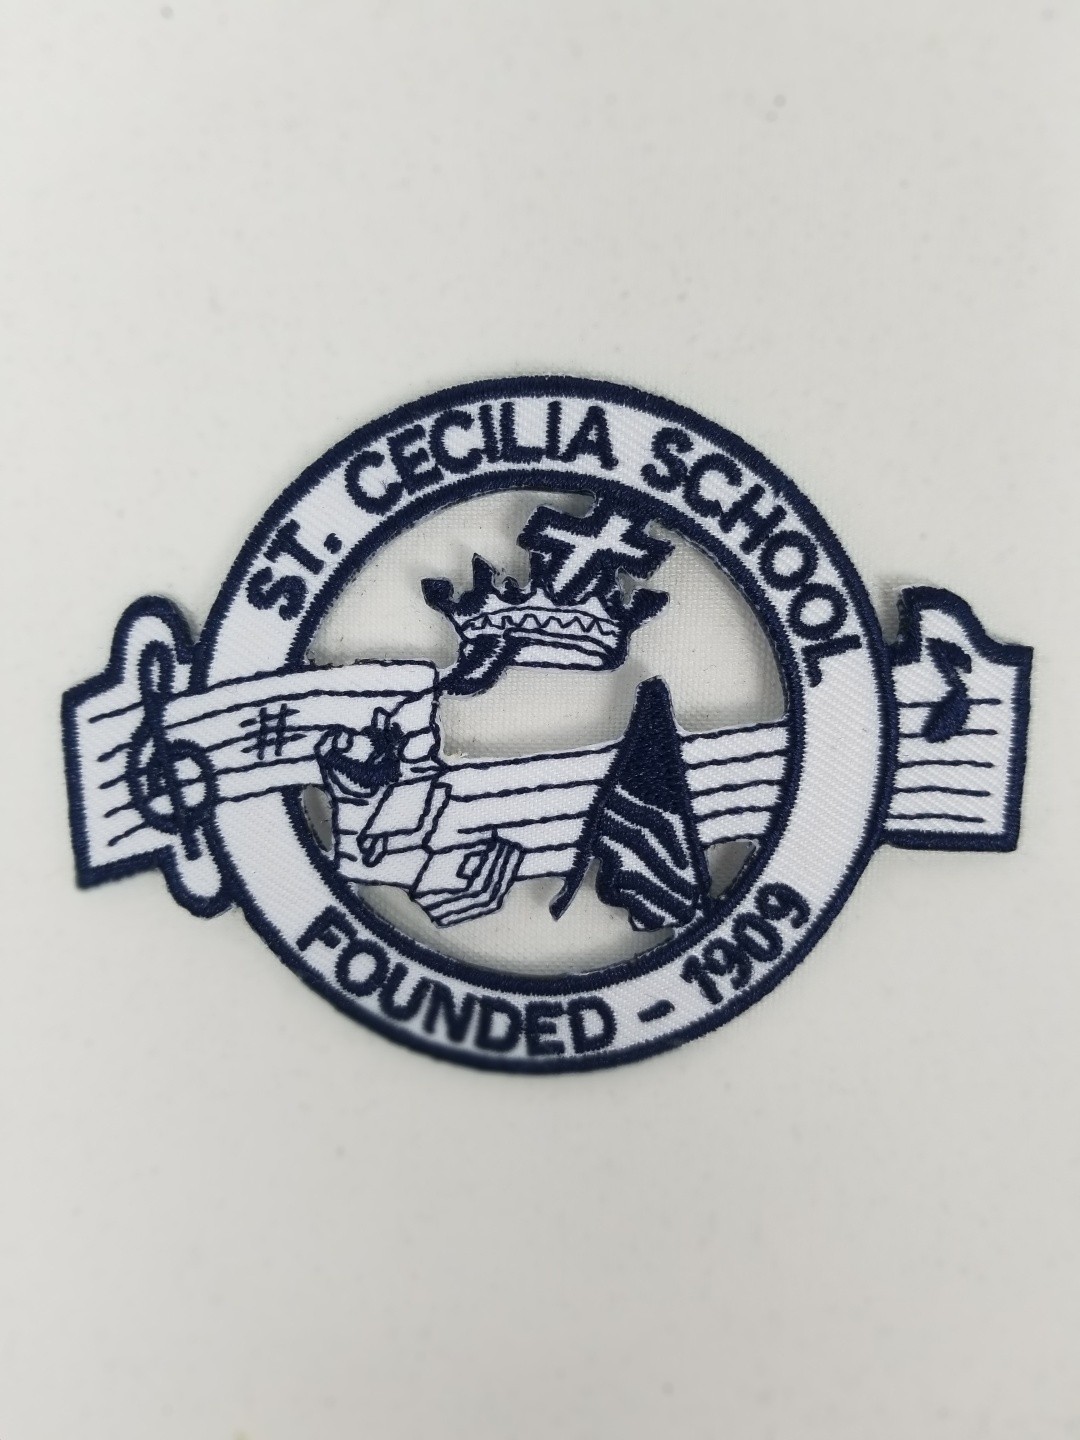 St. Cecilia School- Broussard, LA